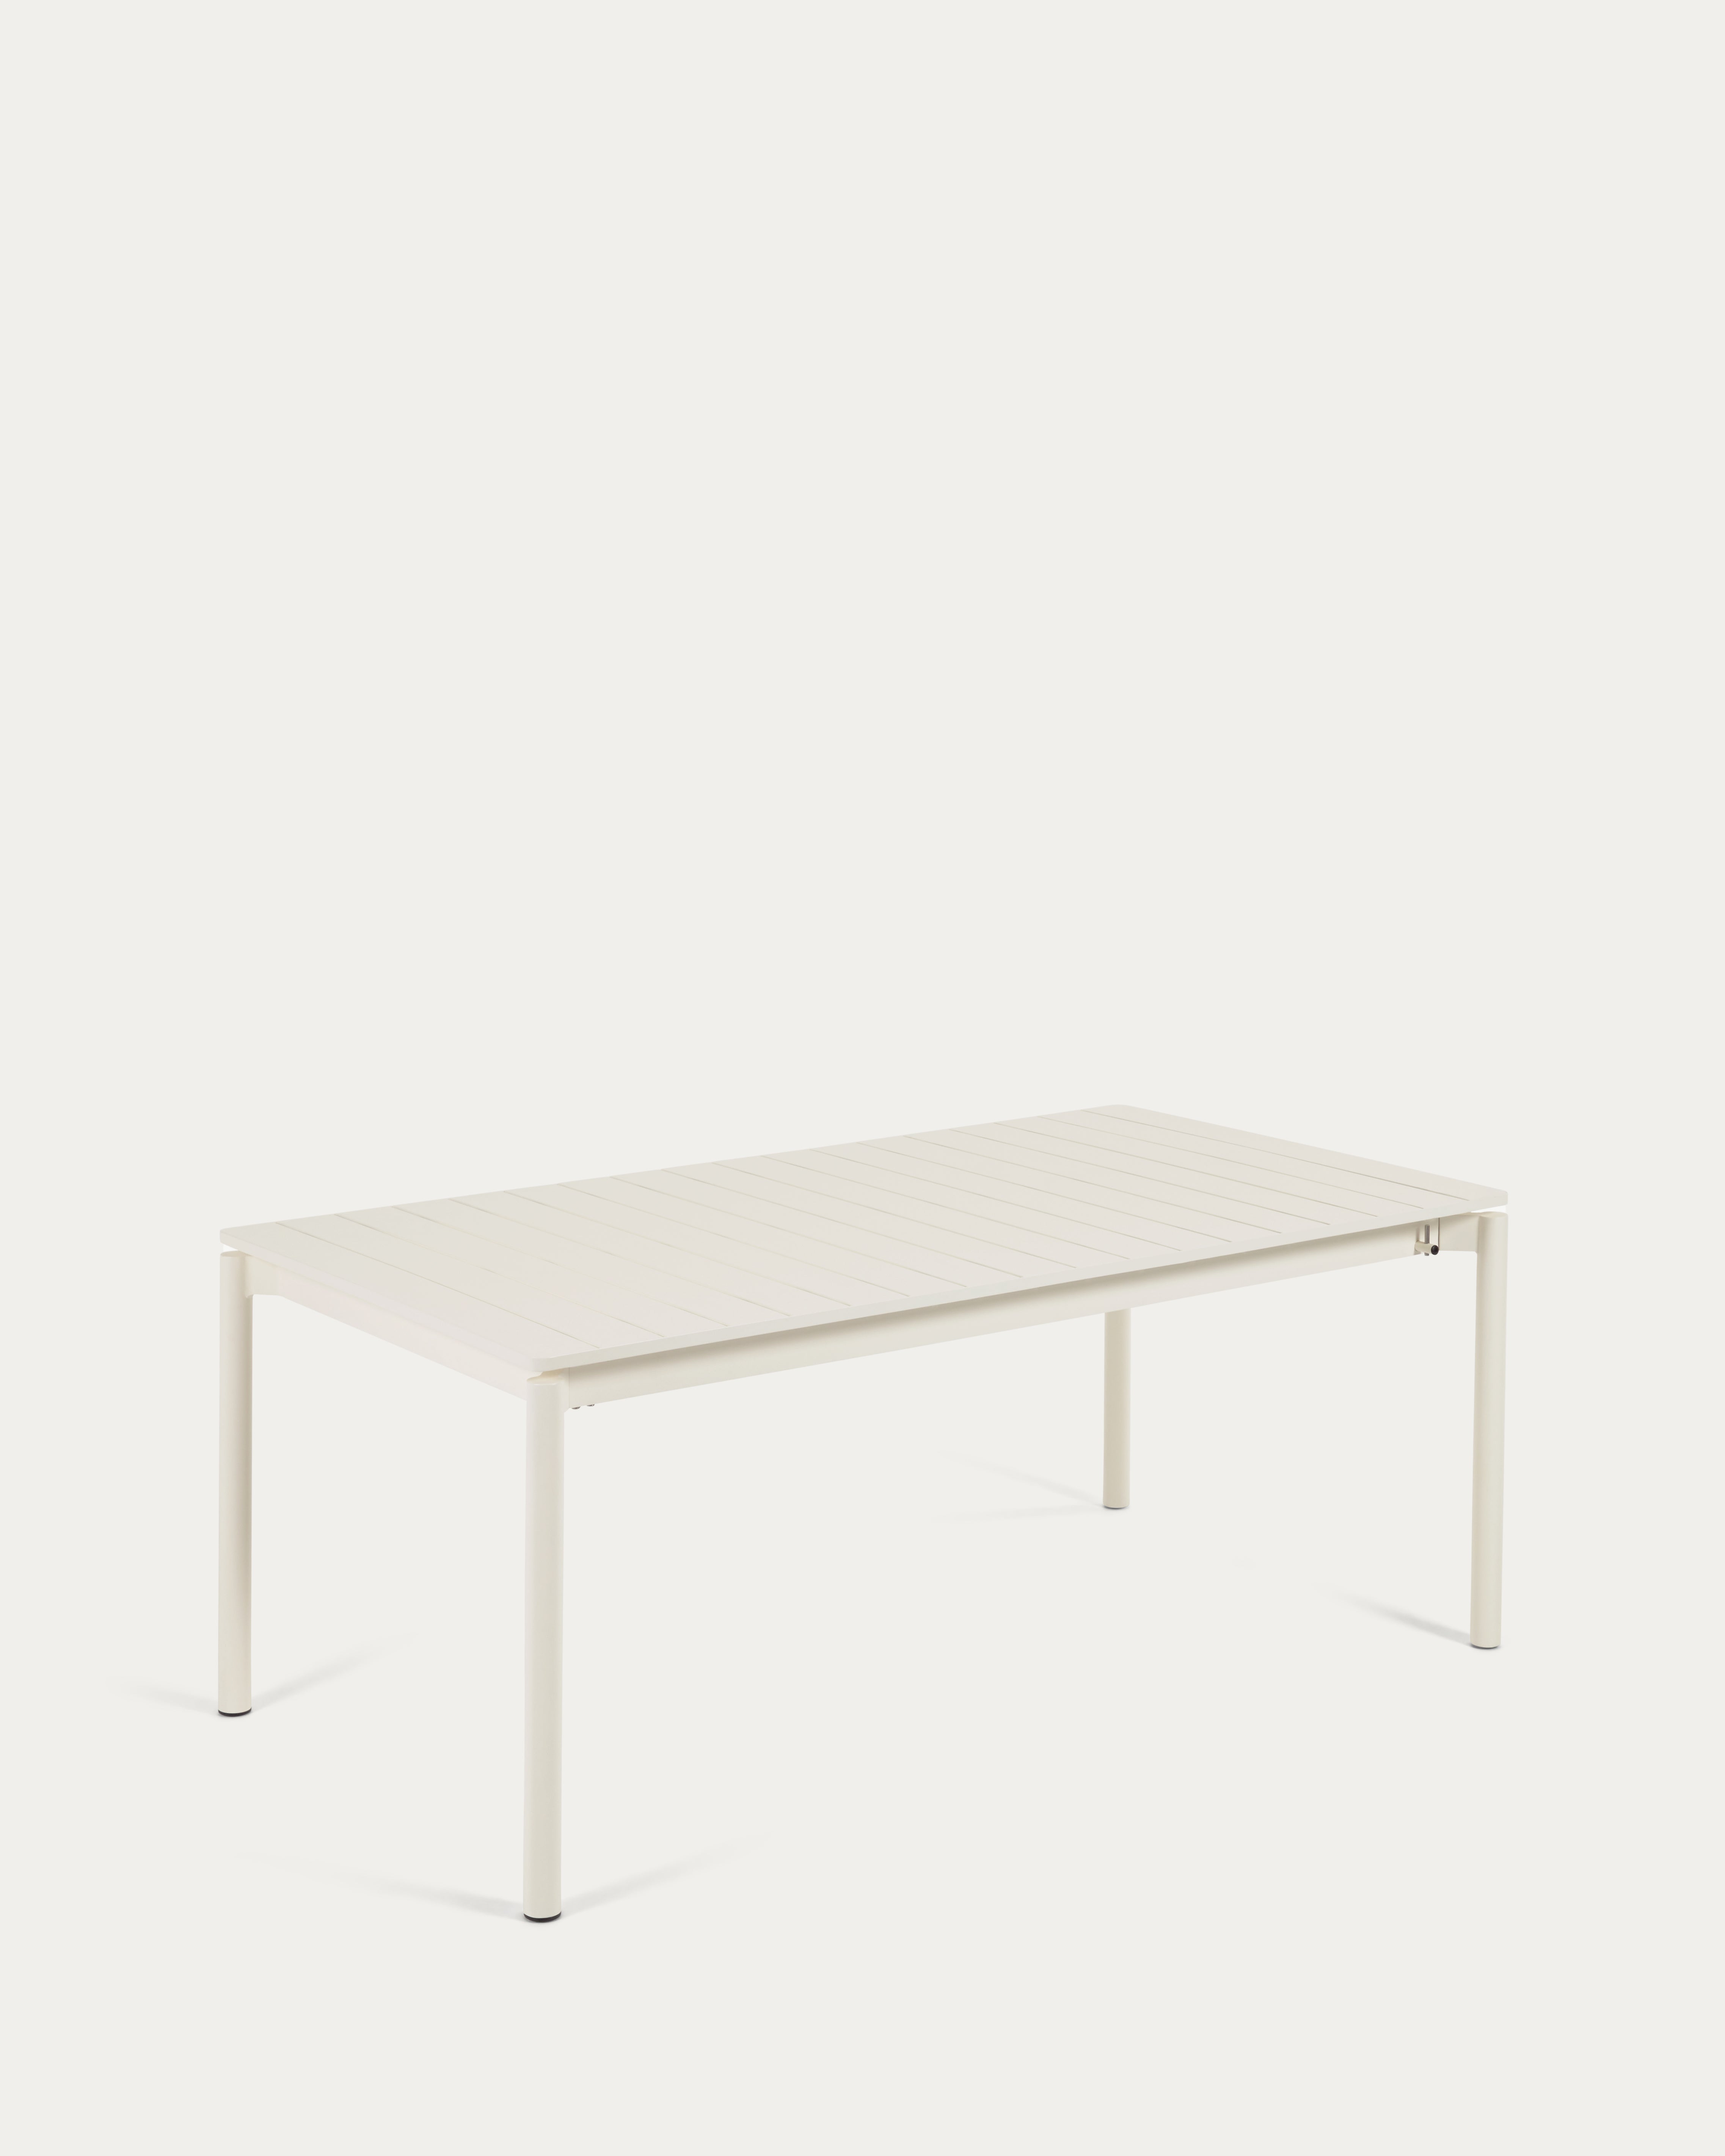 Zaltana kihúzható kültéri asztal alumíniumból nyers befejezéssel, 180 (240) x 100 cm